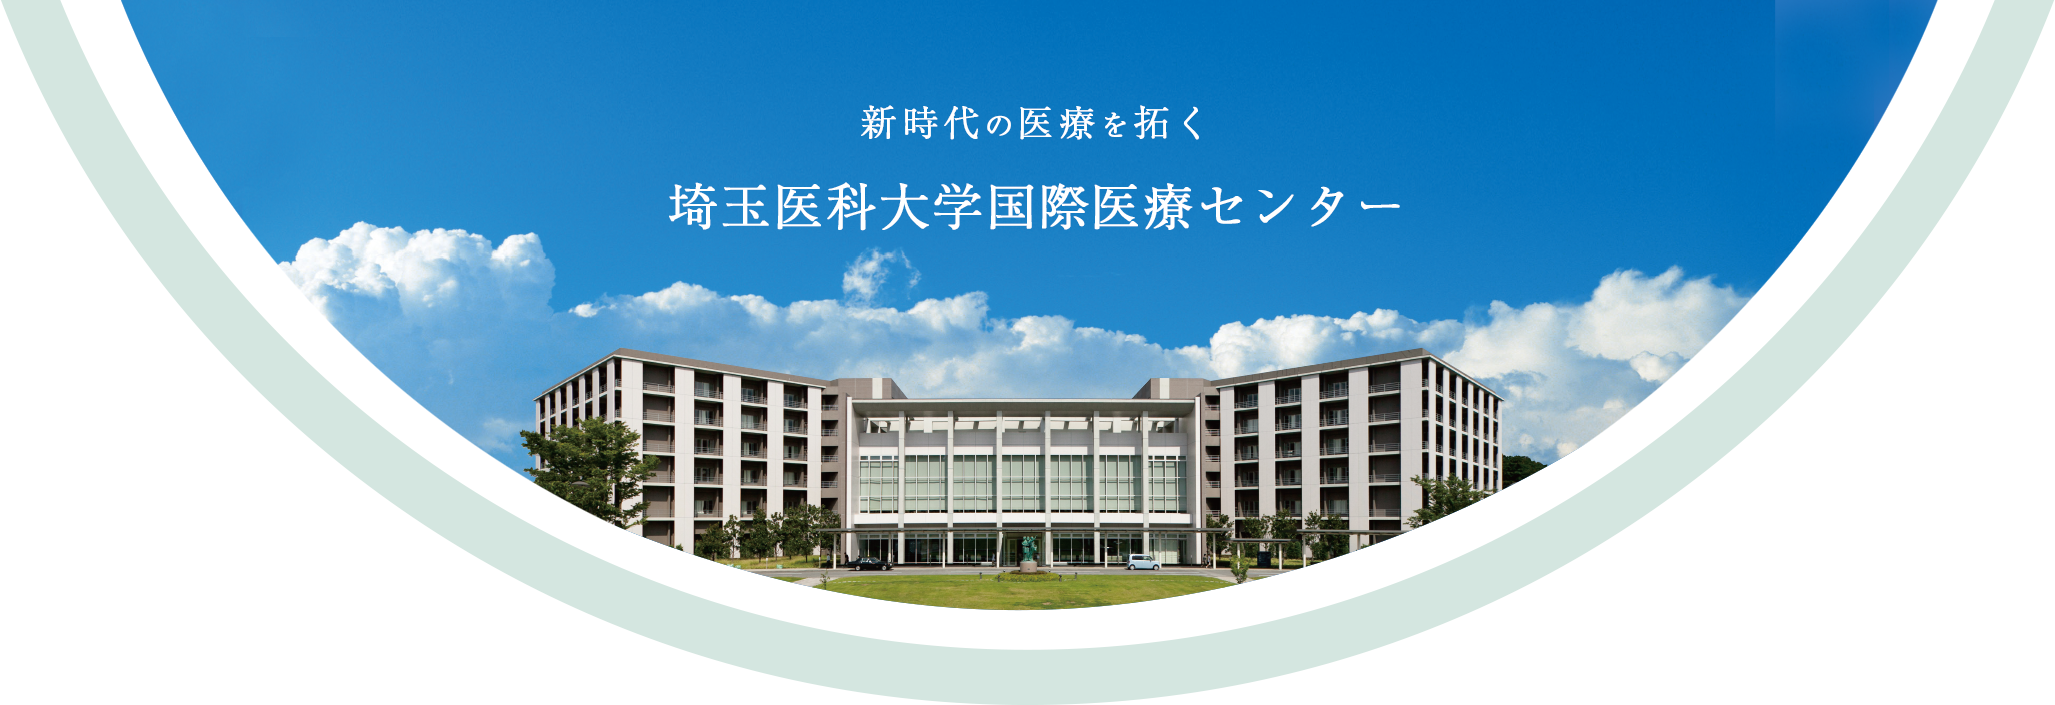 新時代の医療を拓く 埼玉医科大学国際医療センター